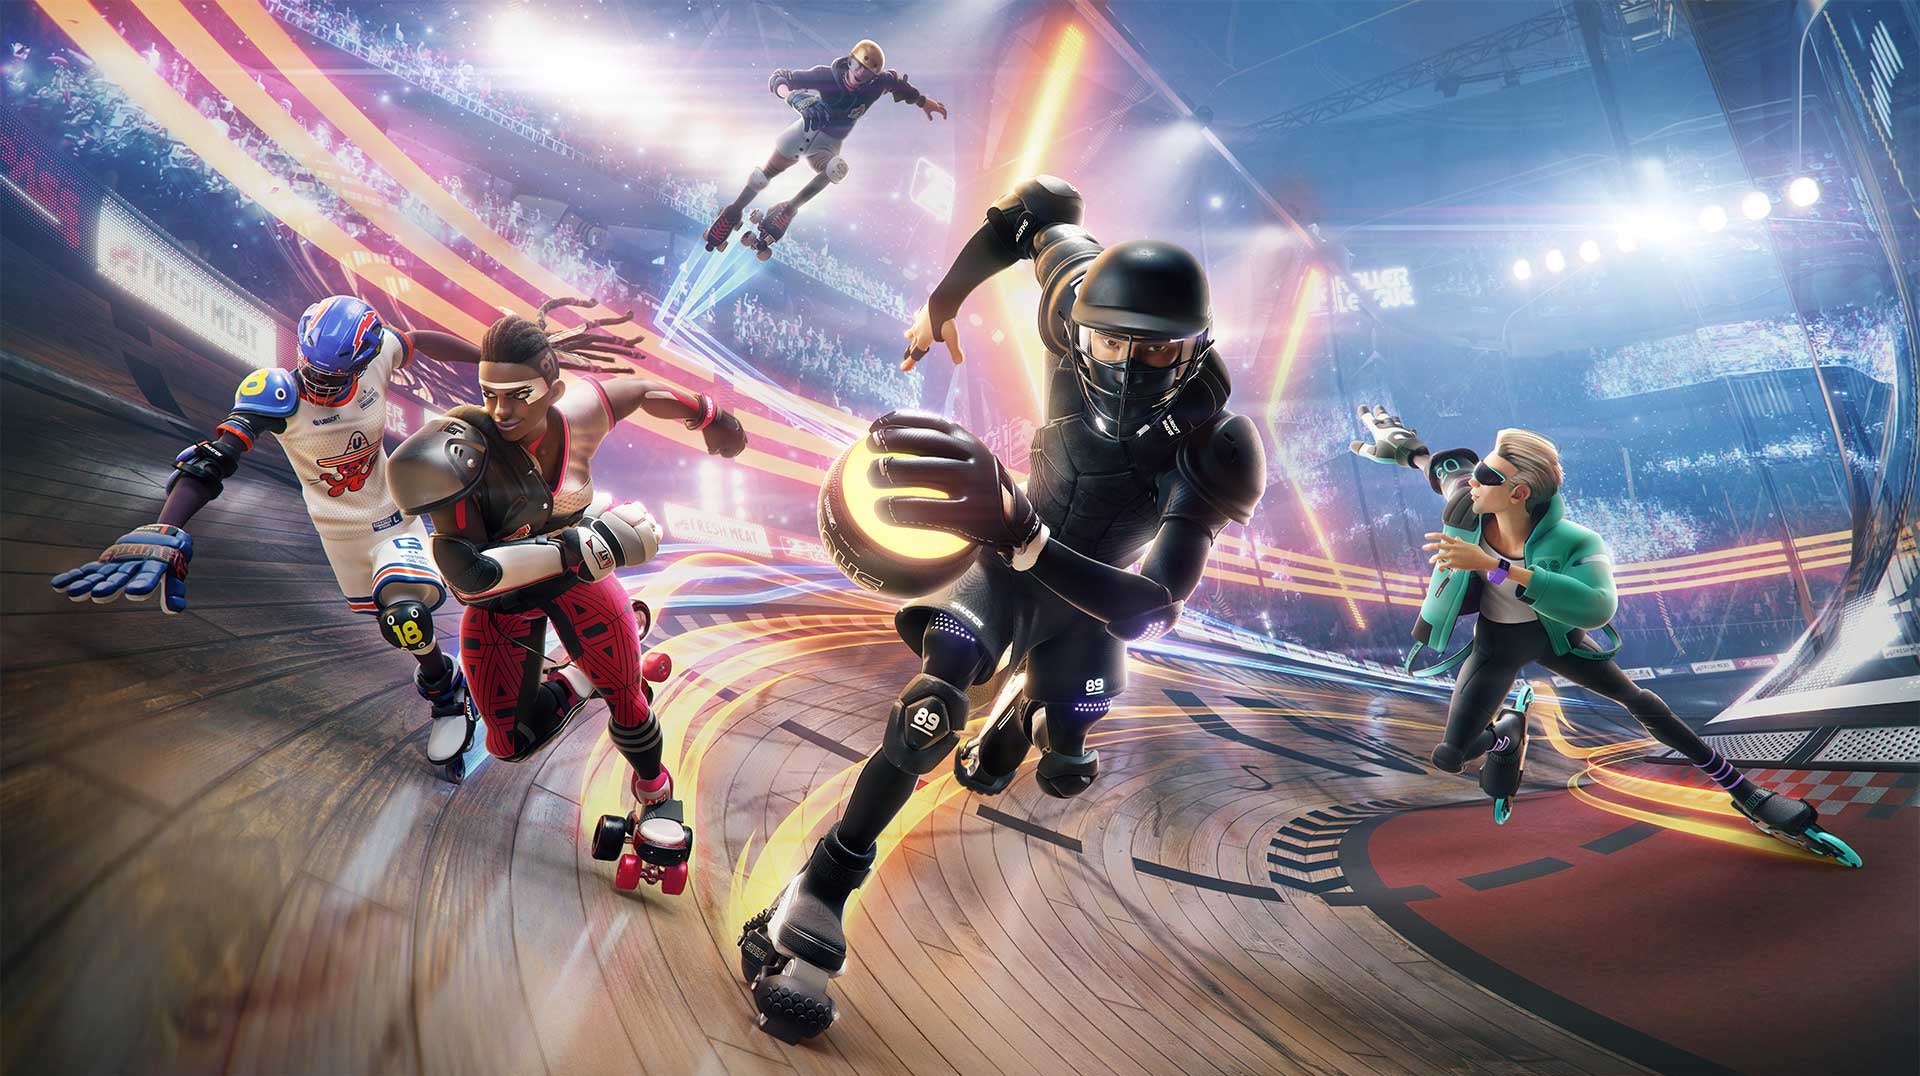 Immagine di Roller Champions è ora disponibile: il nuovo free-to-play Ubisoft arriva su PS4, Xbox One e PC